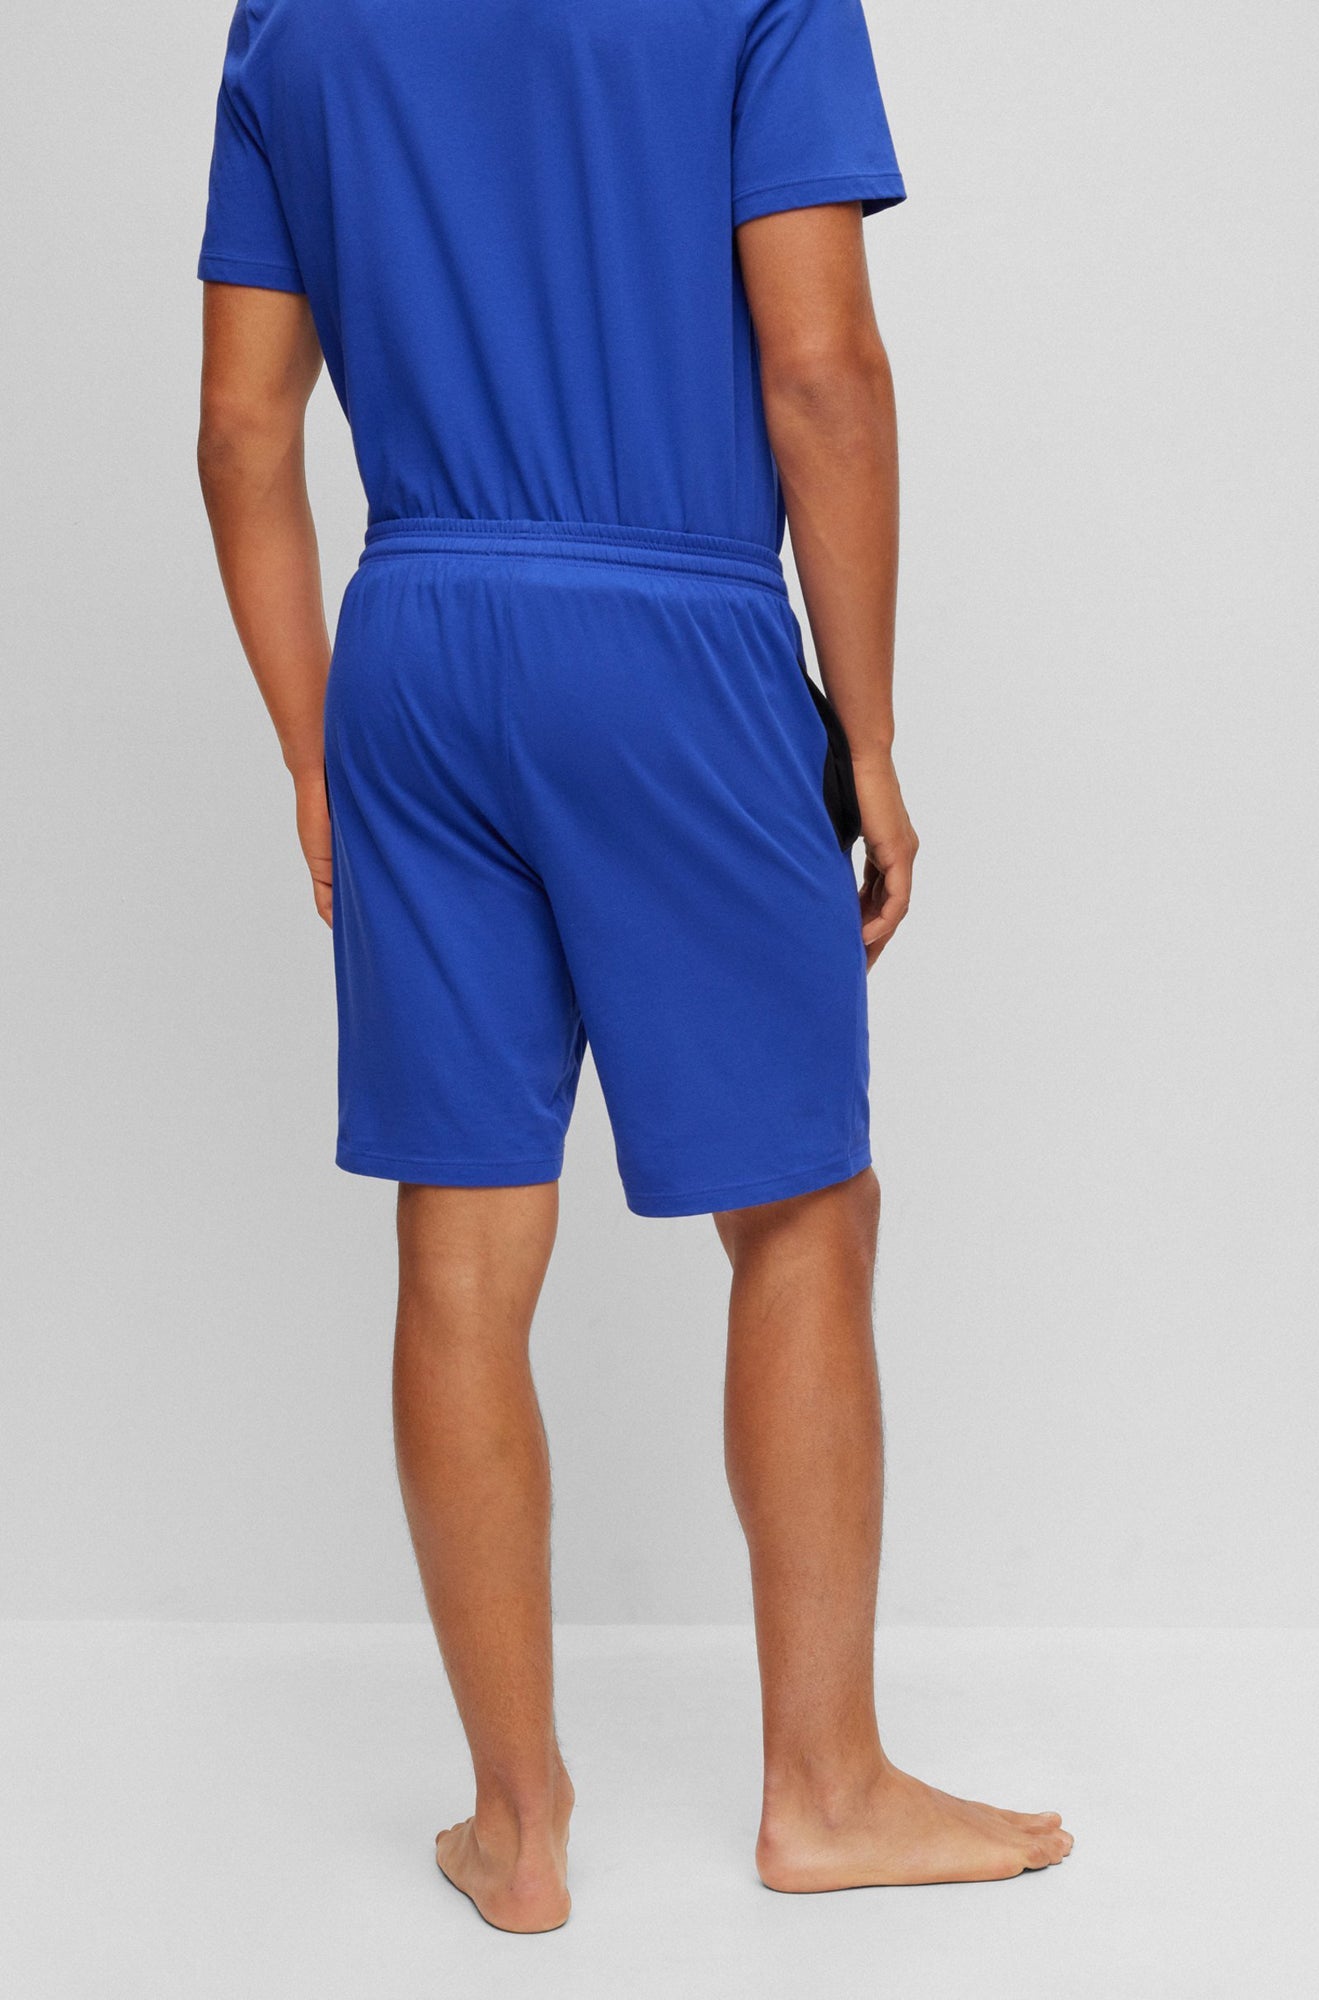 Bermuda pour homme par HUGO BOSS | 50469612 Bleu pâle/434-BRIGHT BLUE | Boutique Vvög, vêtements mode pour homme et femme